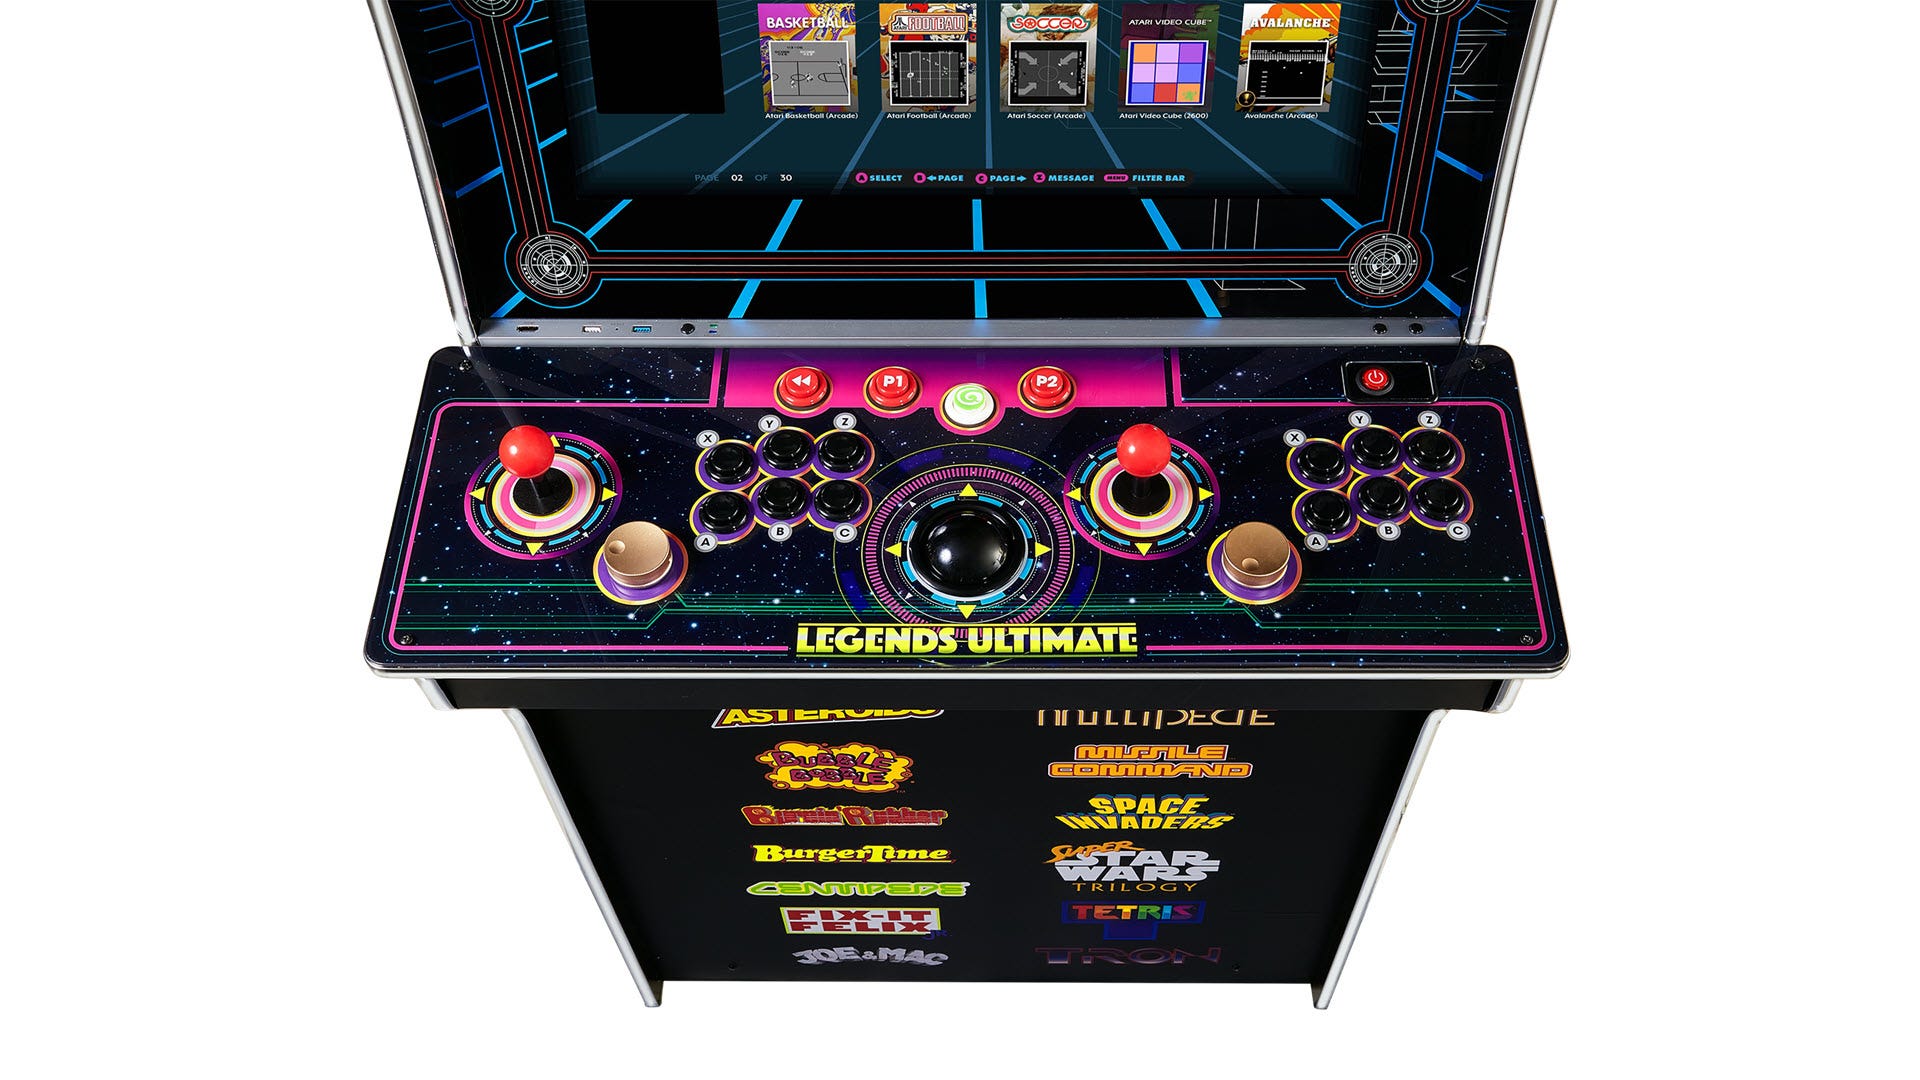 Närbild av Legends Ultimate-kontrolldäck, som visar två joysticks, sex kontroller per stick, twp-spinnare, styrkula och mer.